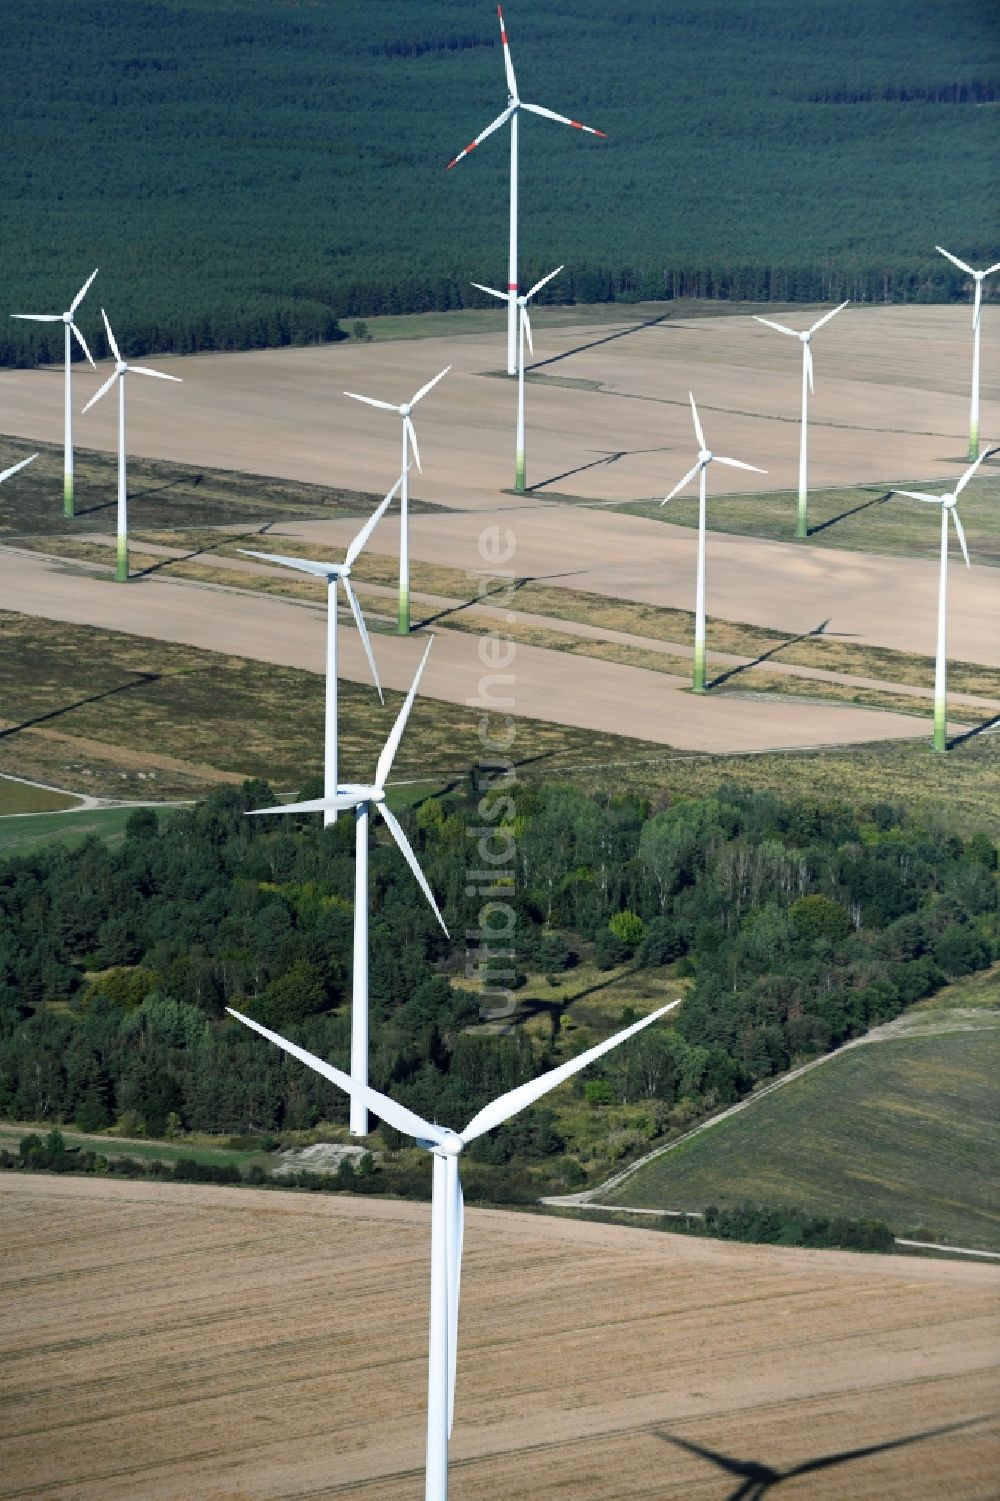 Danna von oben - Windenergieanlagen (WEA) - Windrad- auf einem Feld in Danna im Bundesland Brandenburg, Deutschland